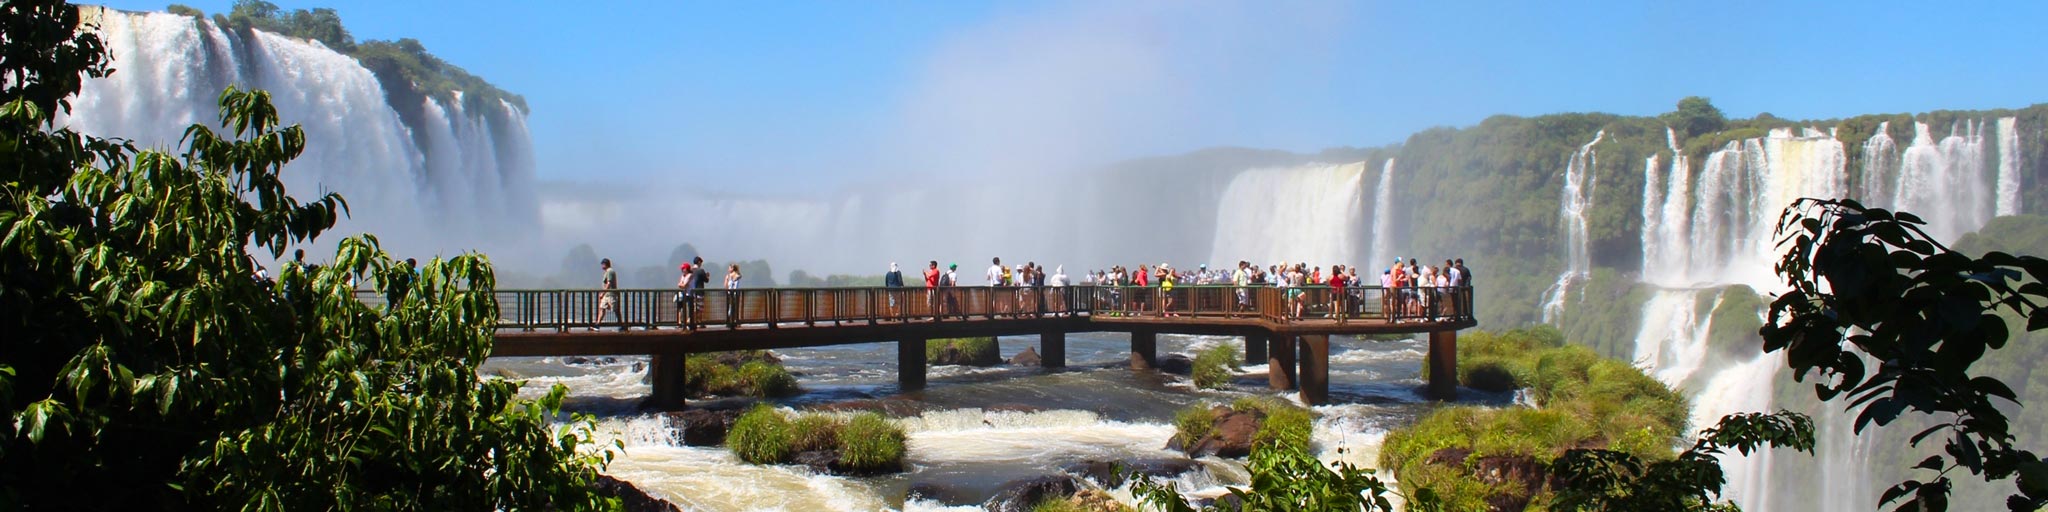 Cataratas de Foz do Iguaçu - Paraná